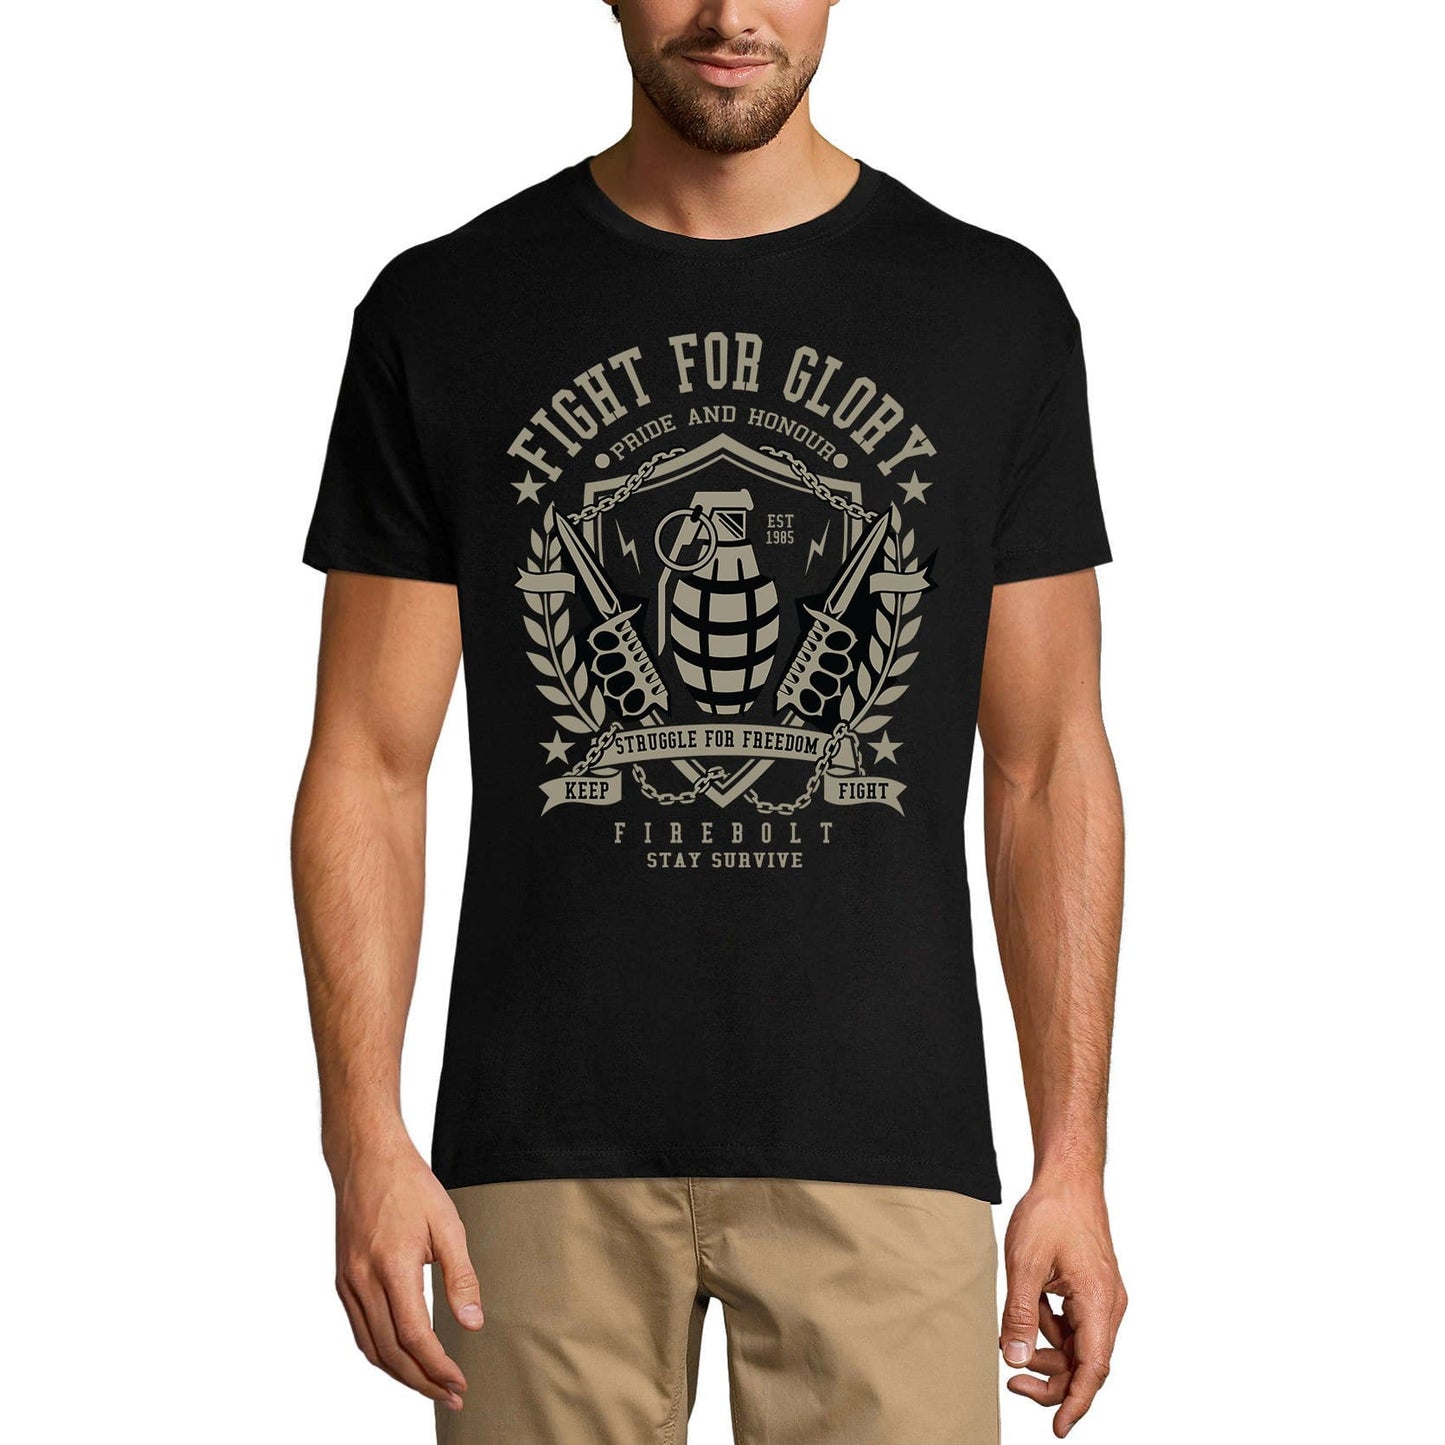 ULTRABASIC Men's T-Shirt Fight for Glory Struggle for Freedom 1985 - Grenade Tee Shirt